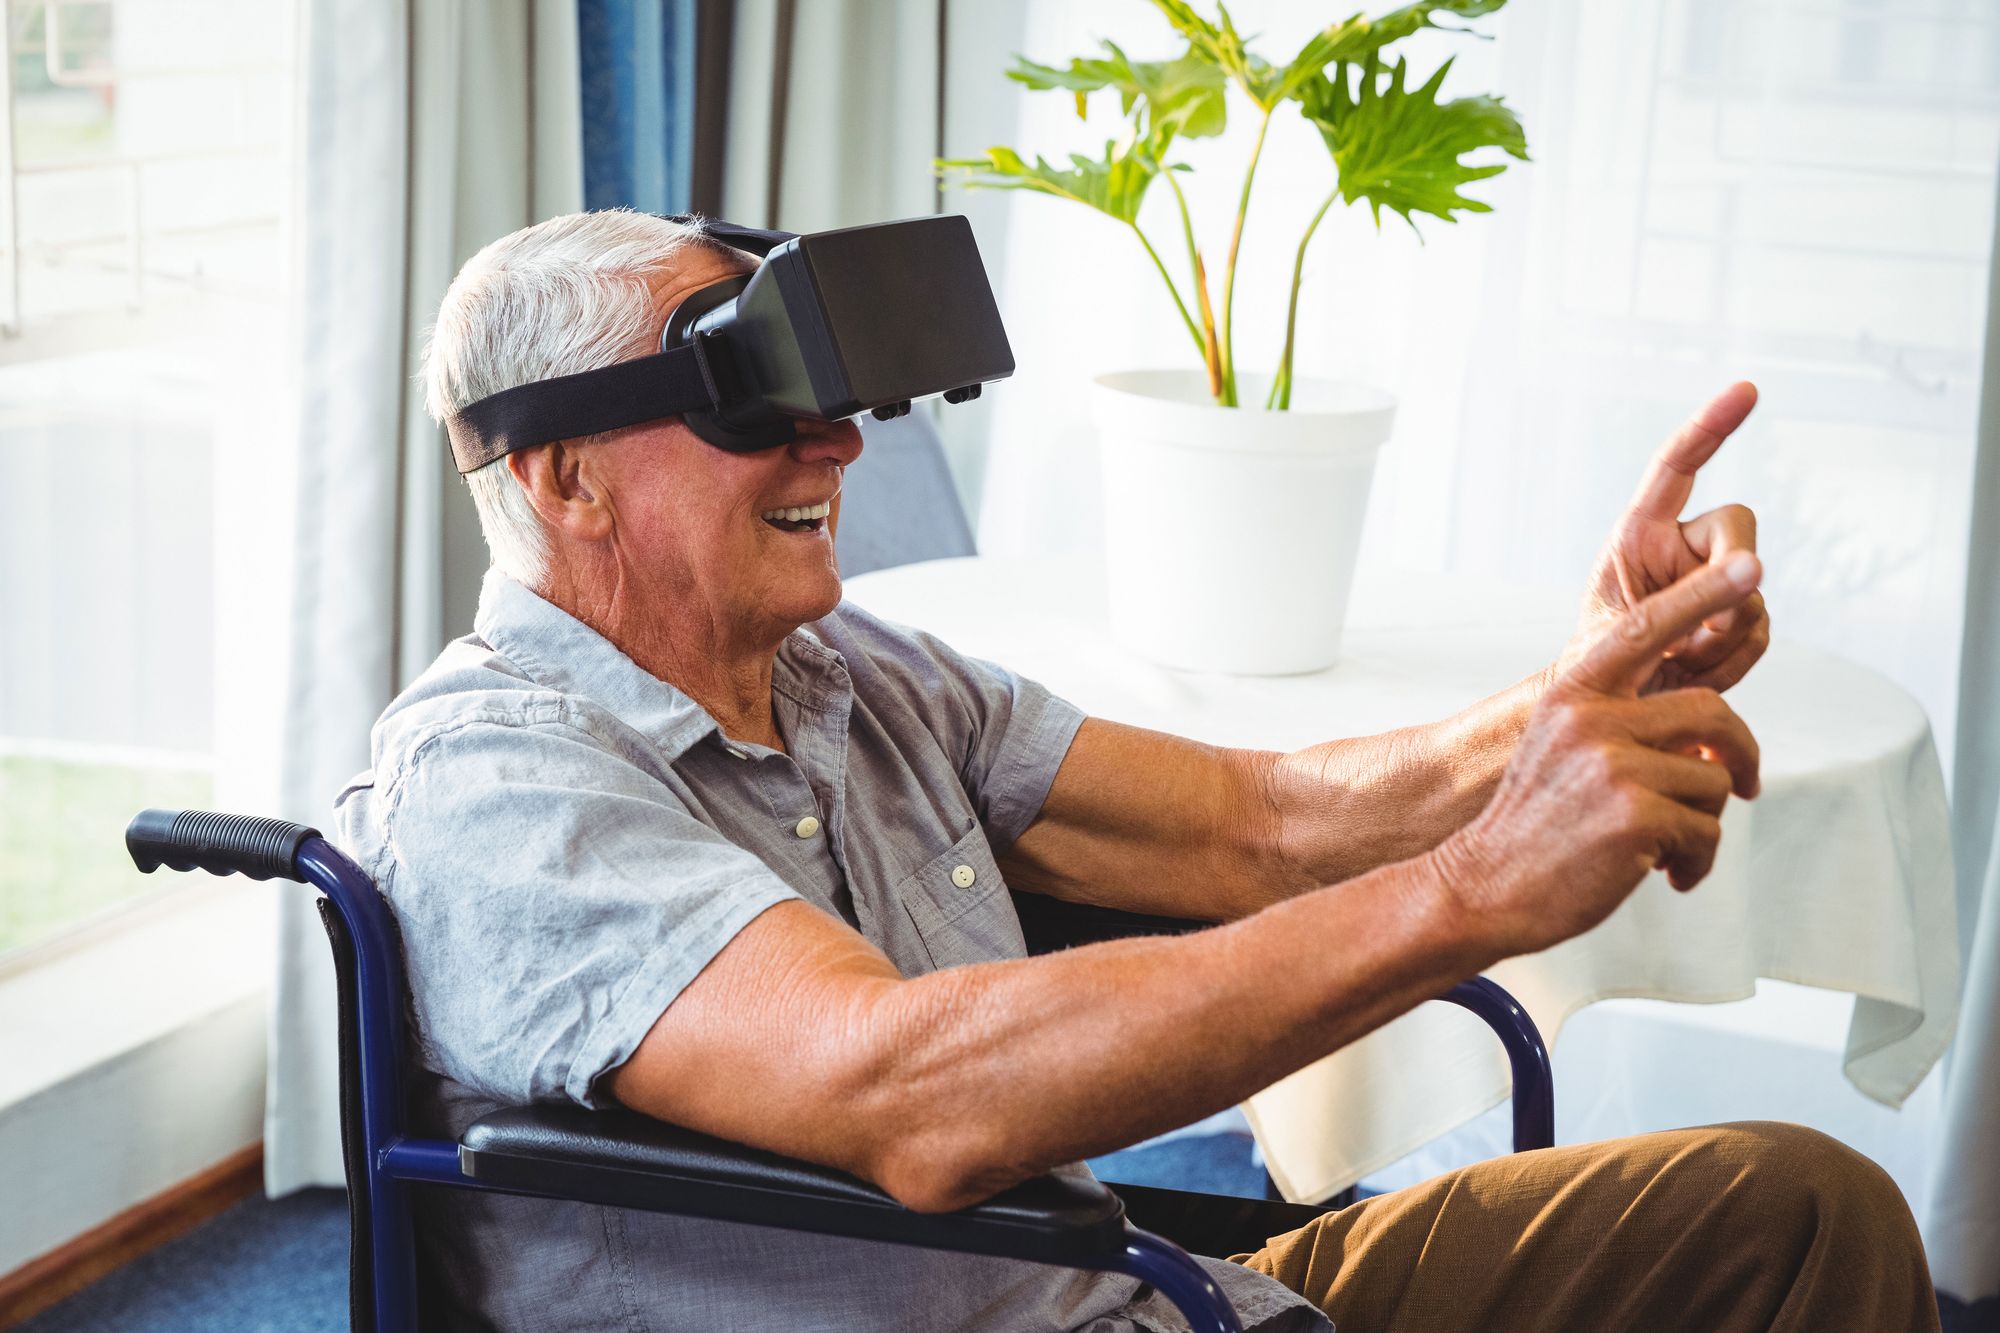 La réalité virtuelle comme thérapie?